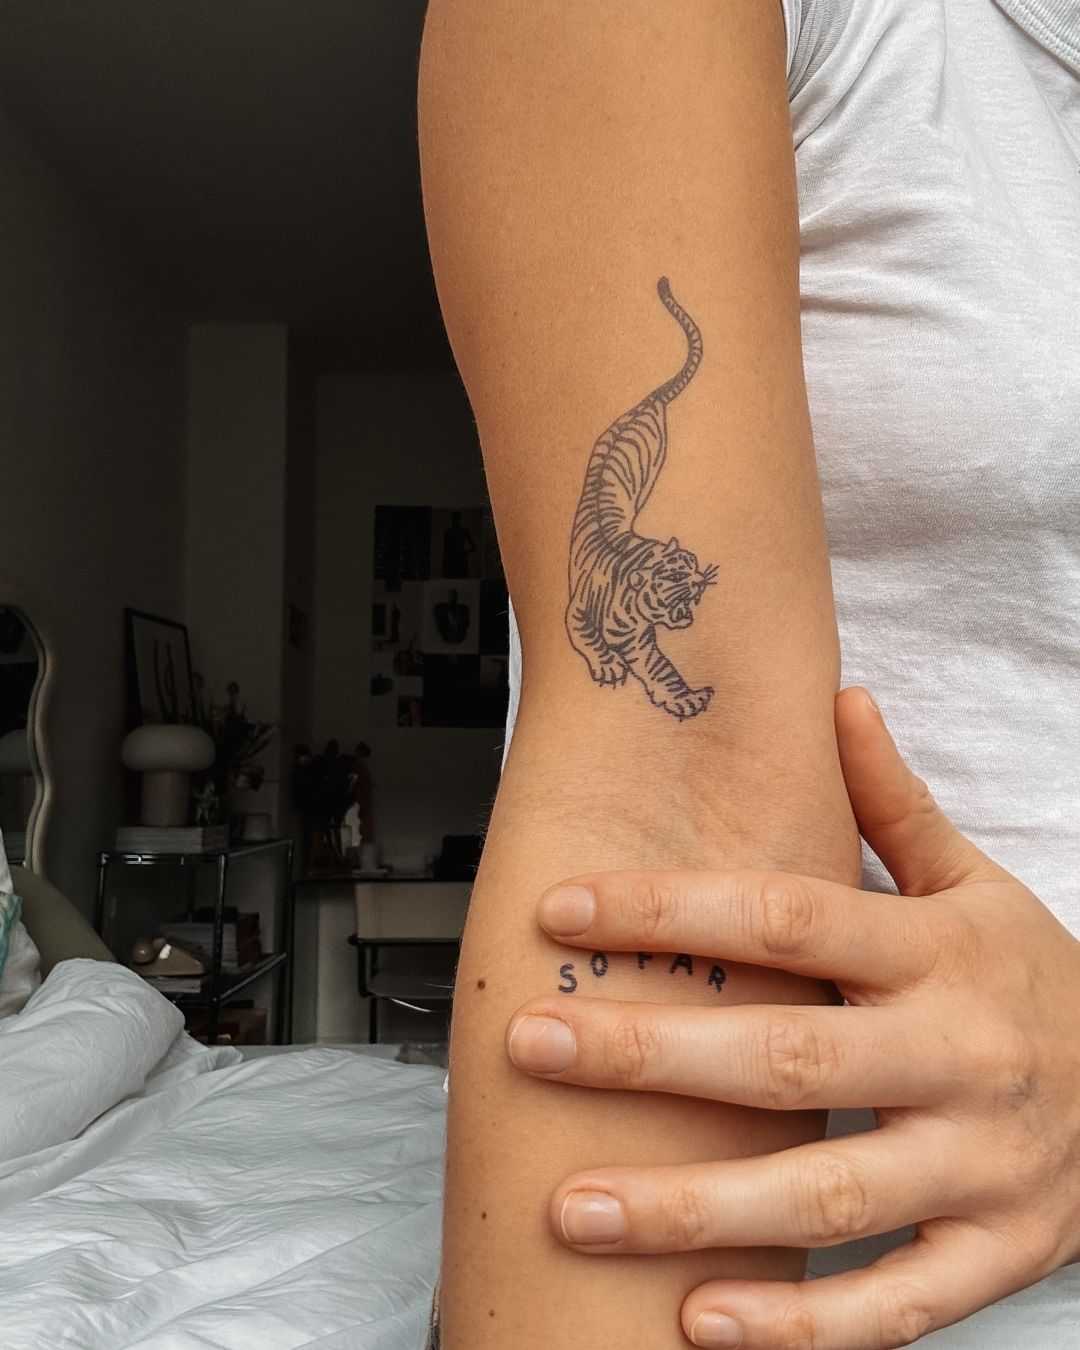 tatuaggio tigre